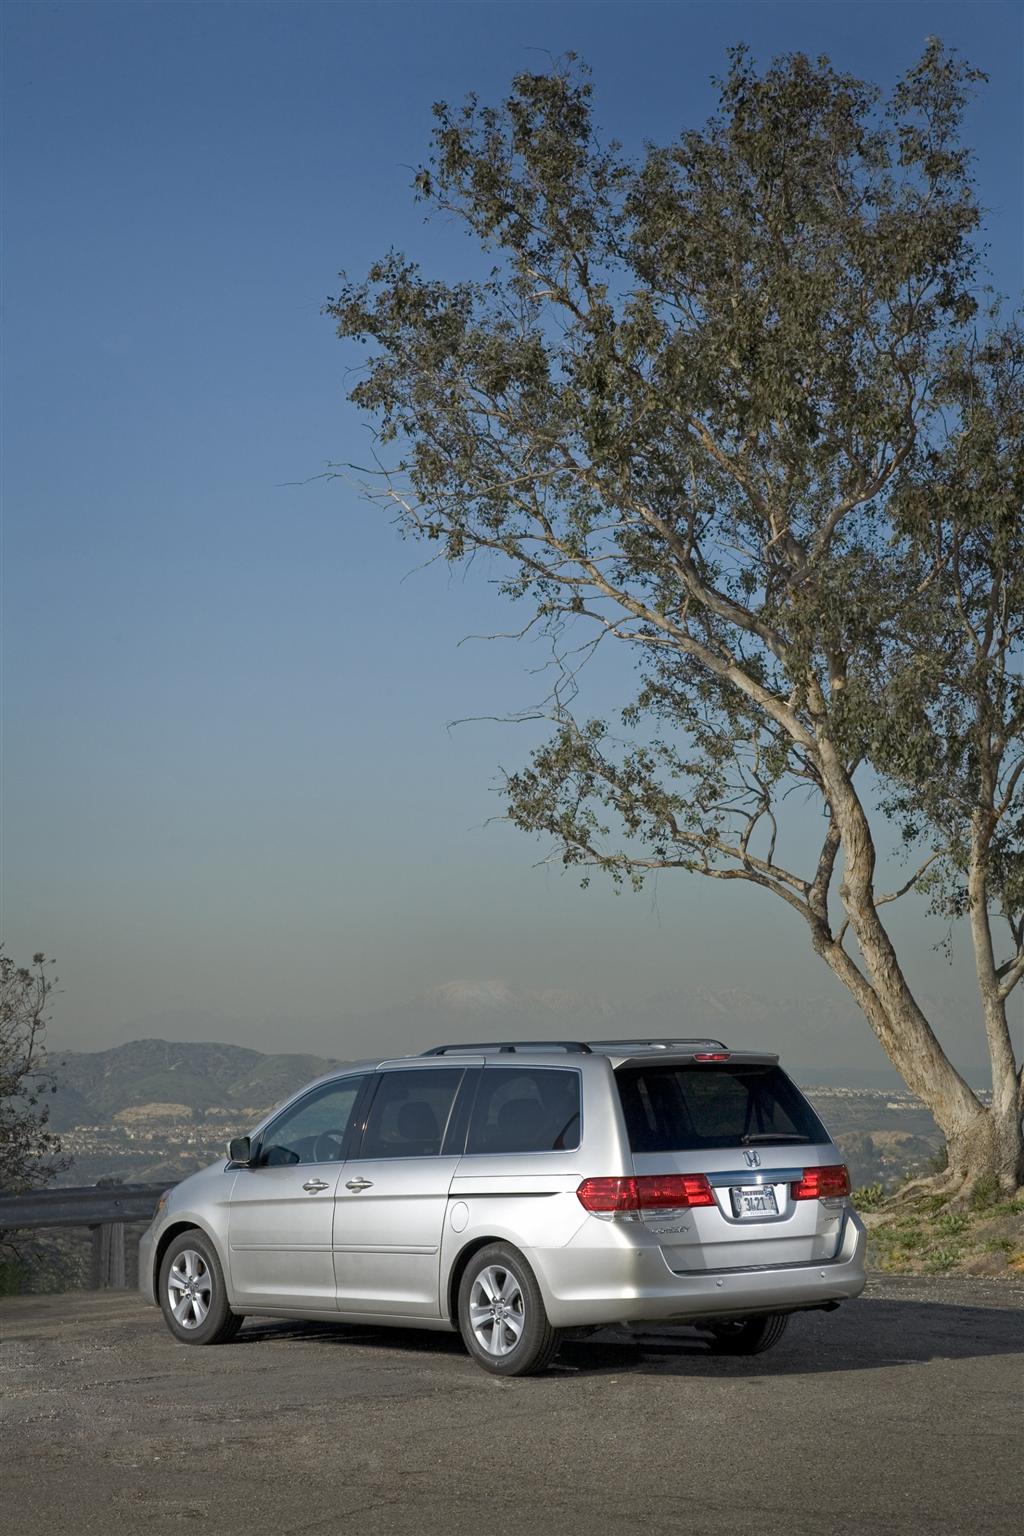 2009 Honda Odyssey